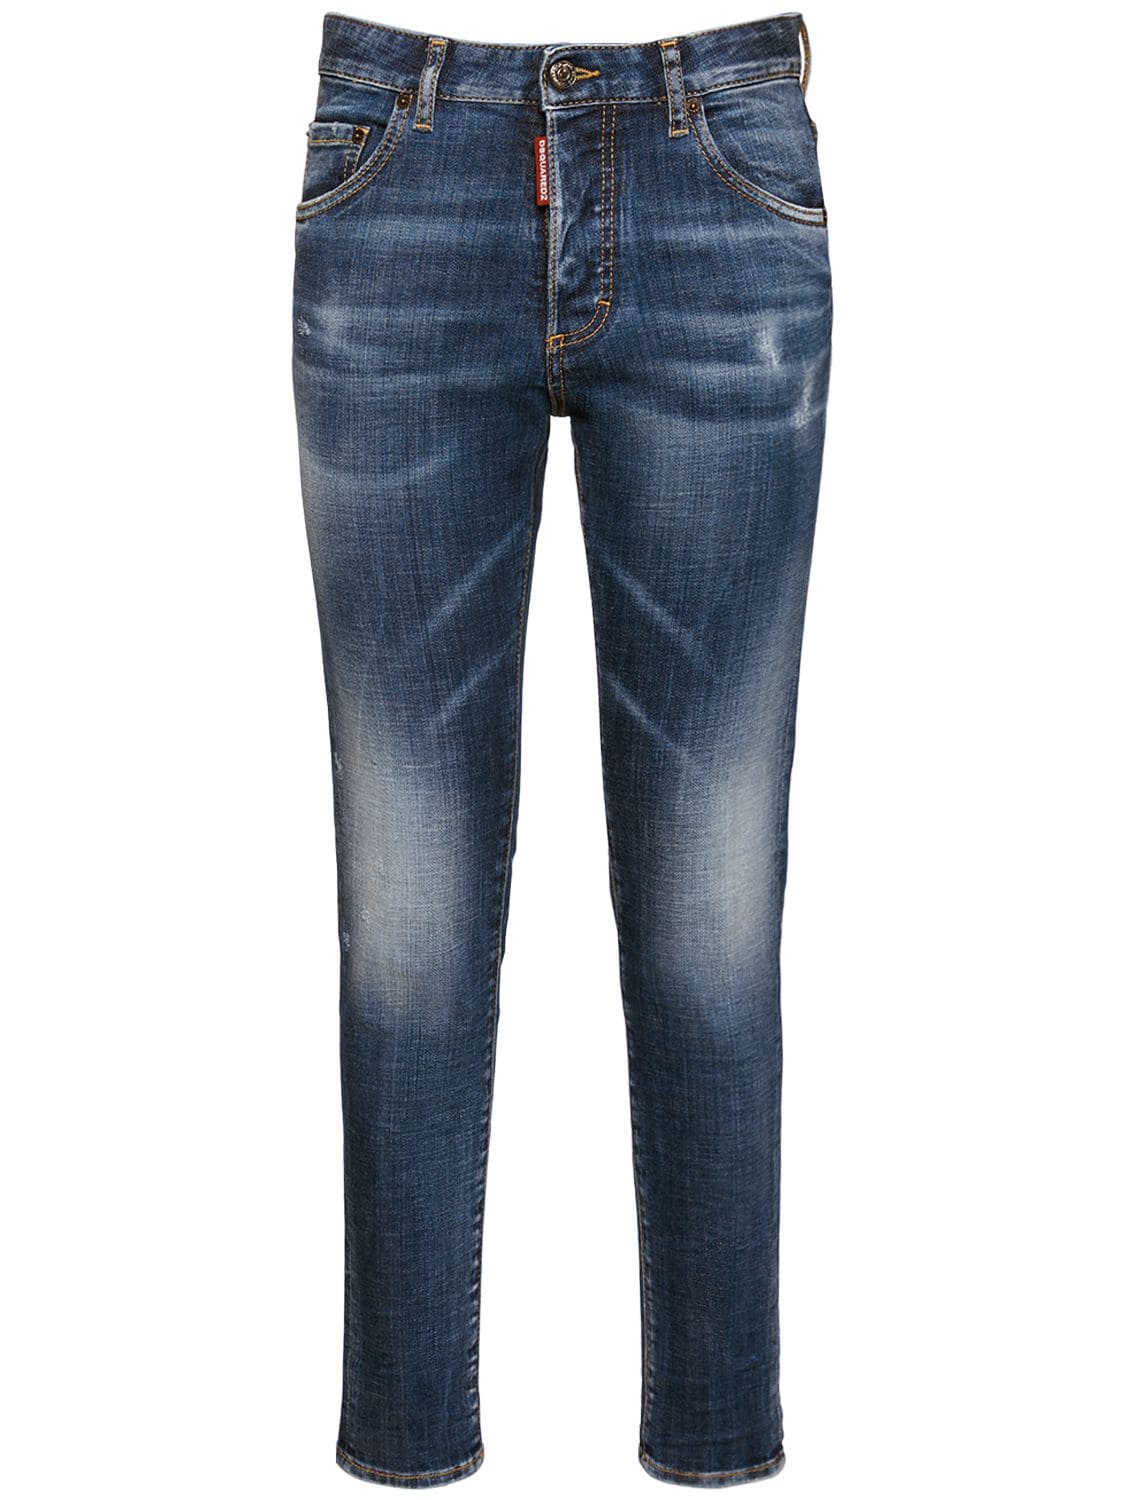 Jeans Slim Fit Skinny Dan In Denim Di Cotone - DSQUARED2 - Modalova